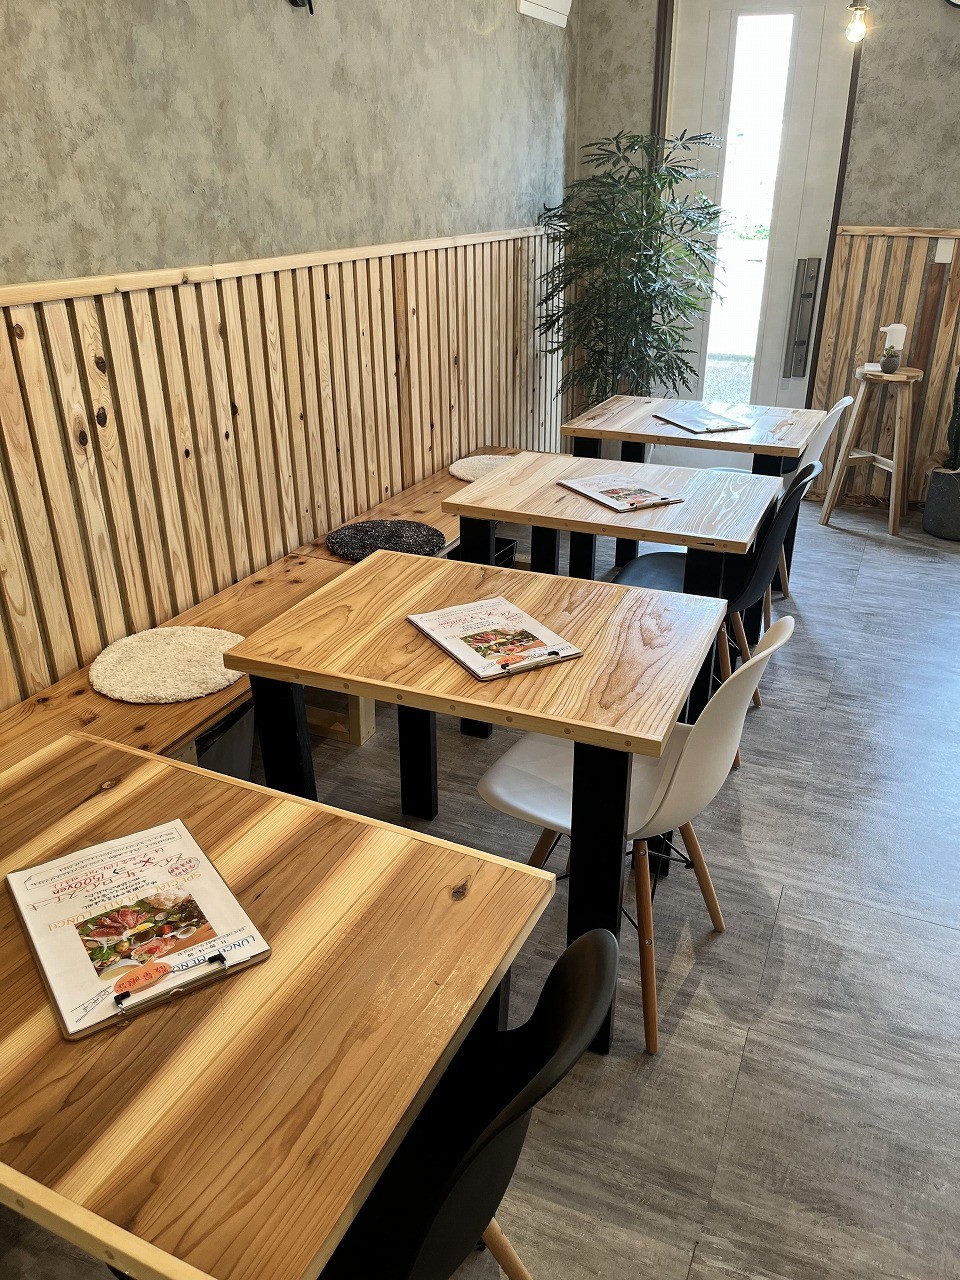 鳥取県米子市にオープンした『オンレントカフェ』の店内の様子